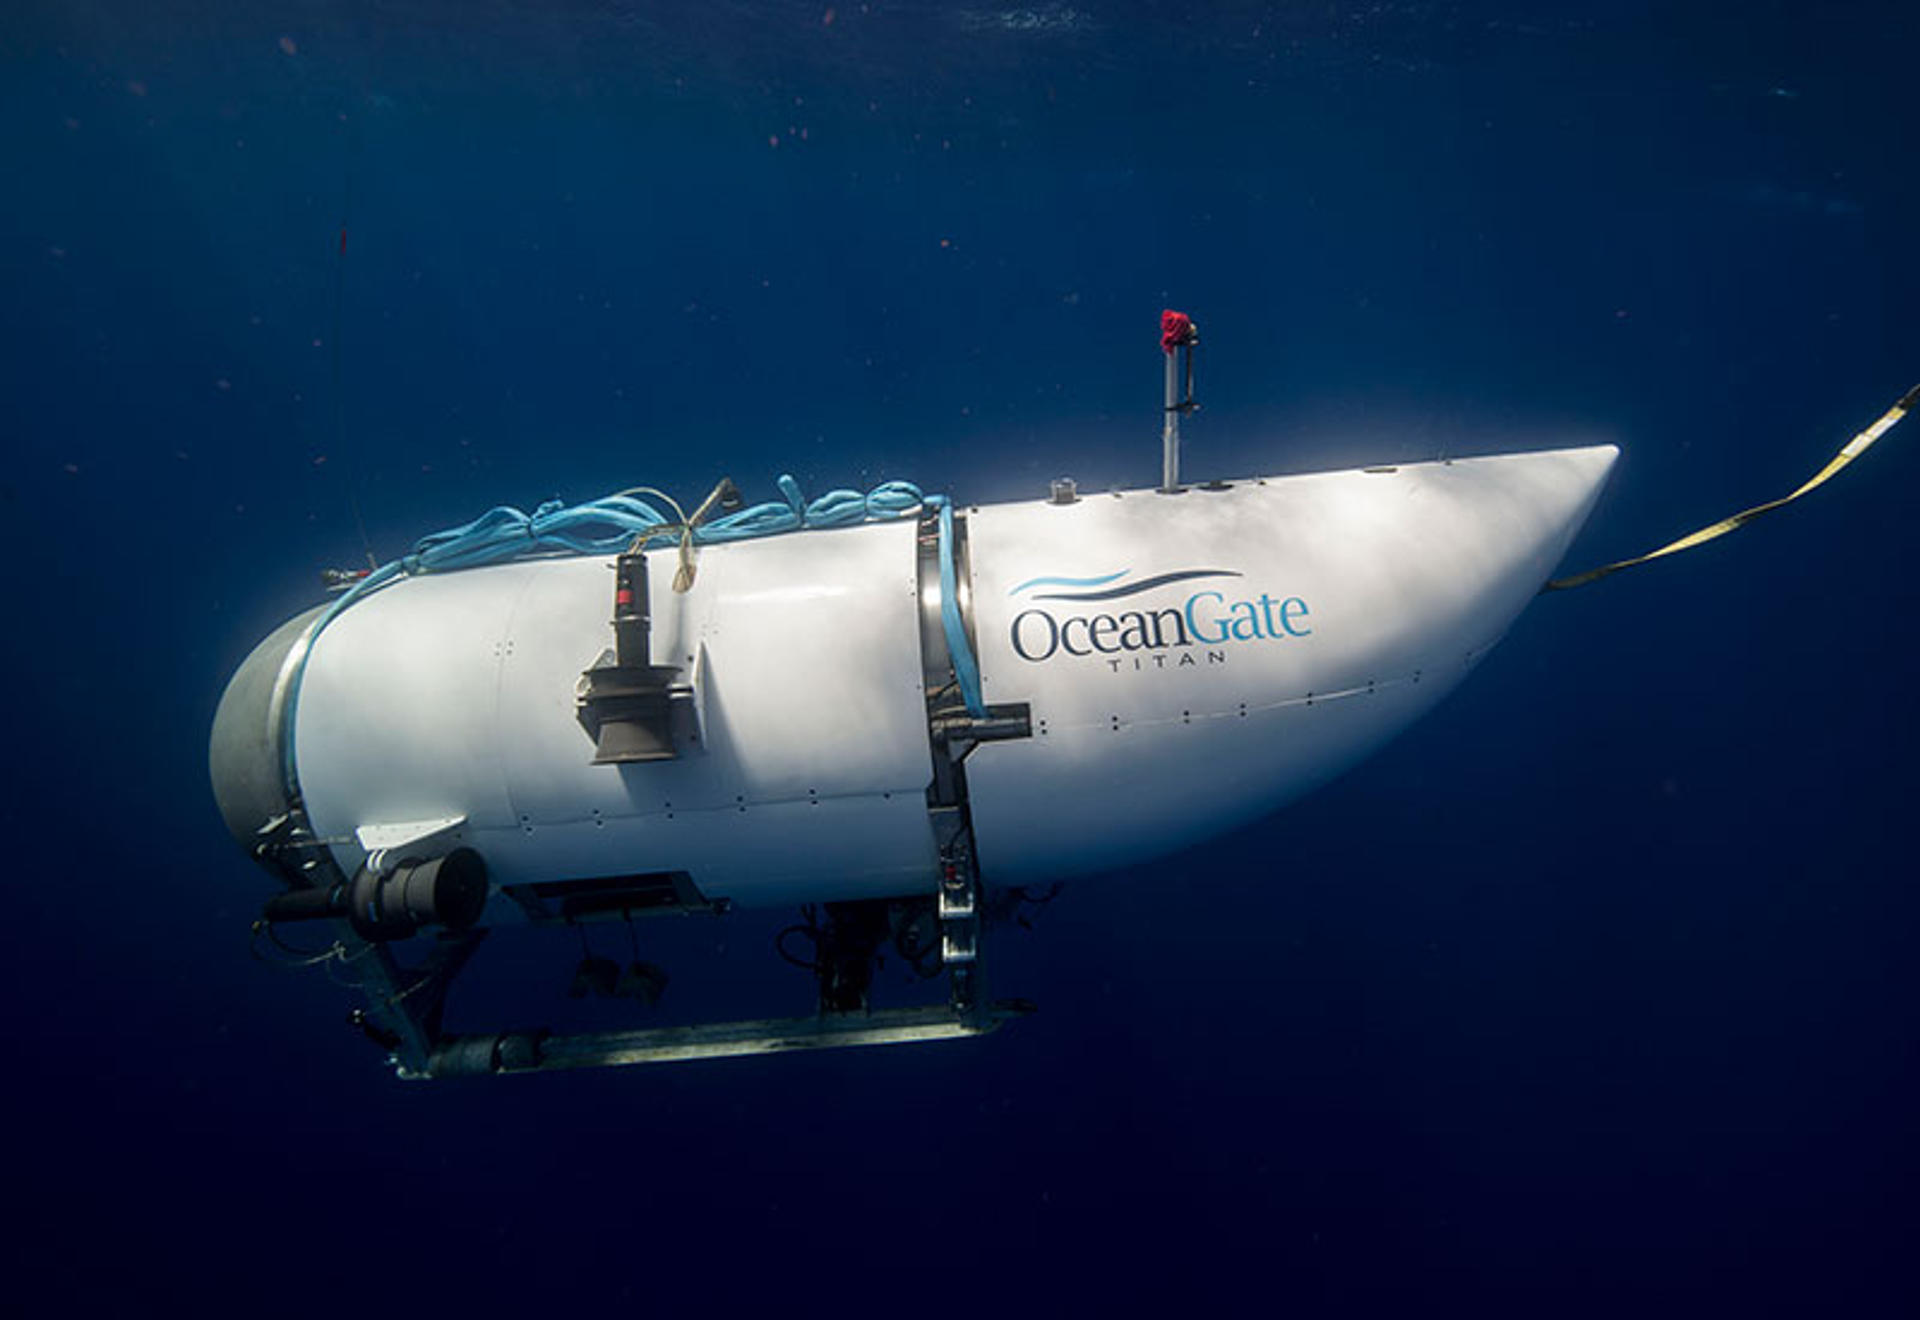 Canadá investigará las circunstancias del accidente del submarino turístico Titán